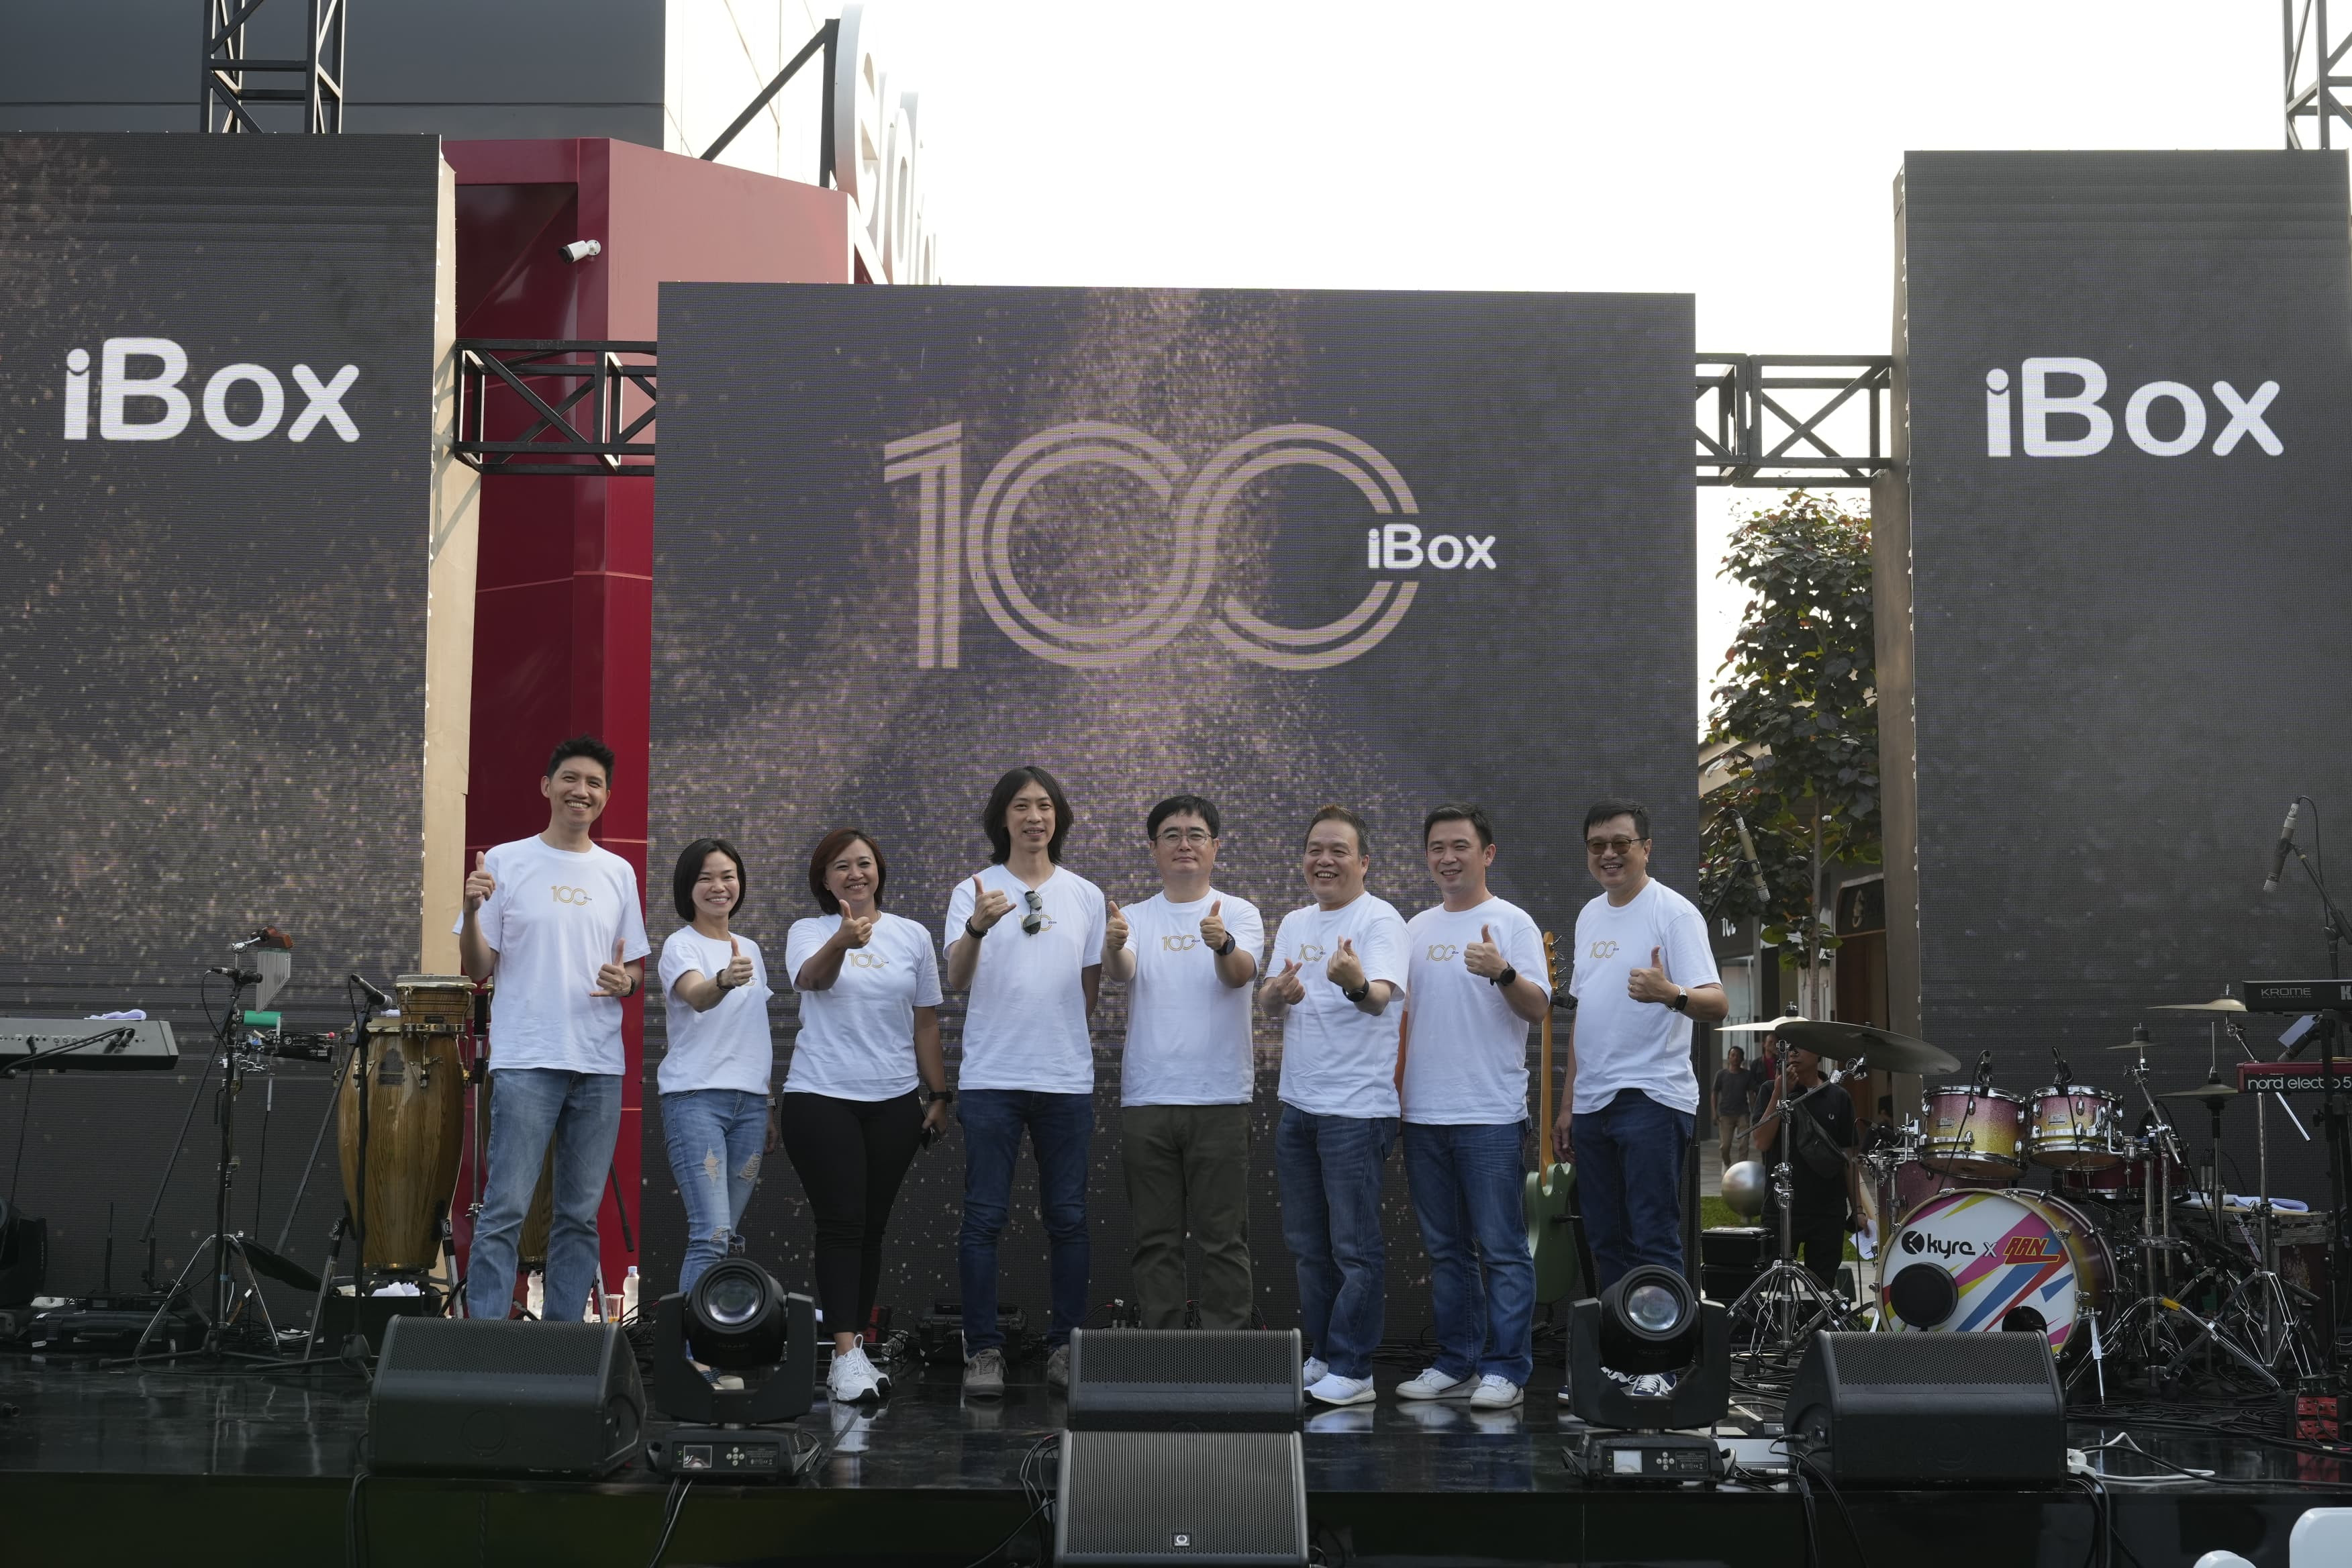 Erajaya resmikan toko iBox ke-100